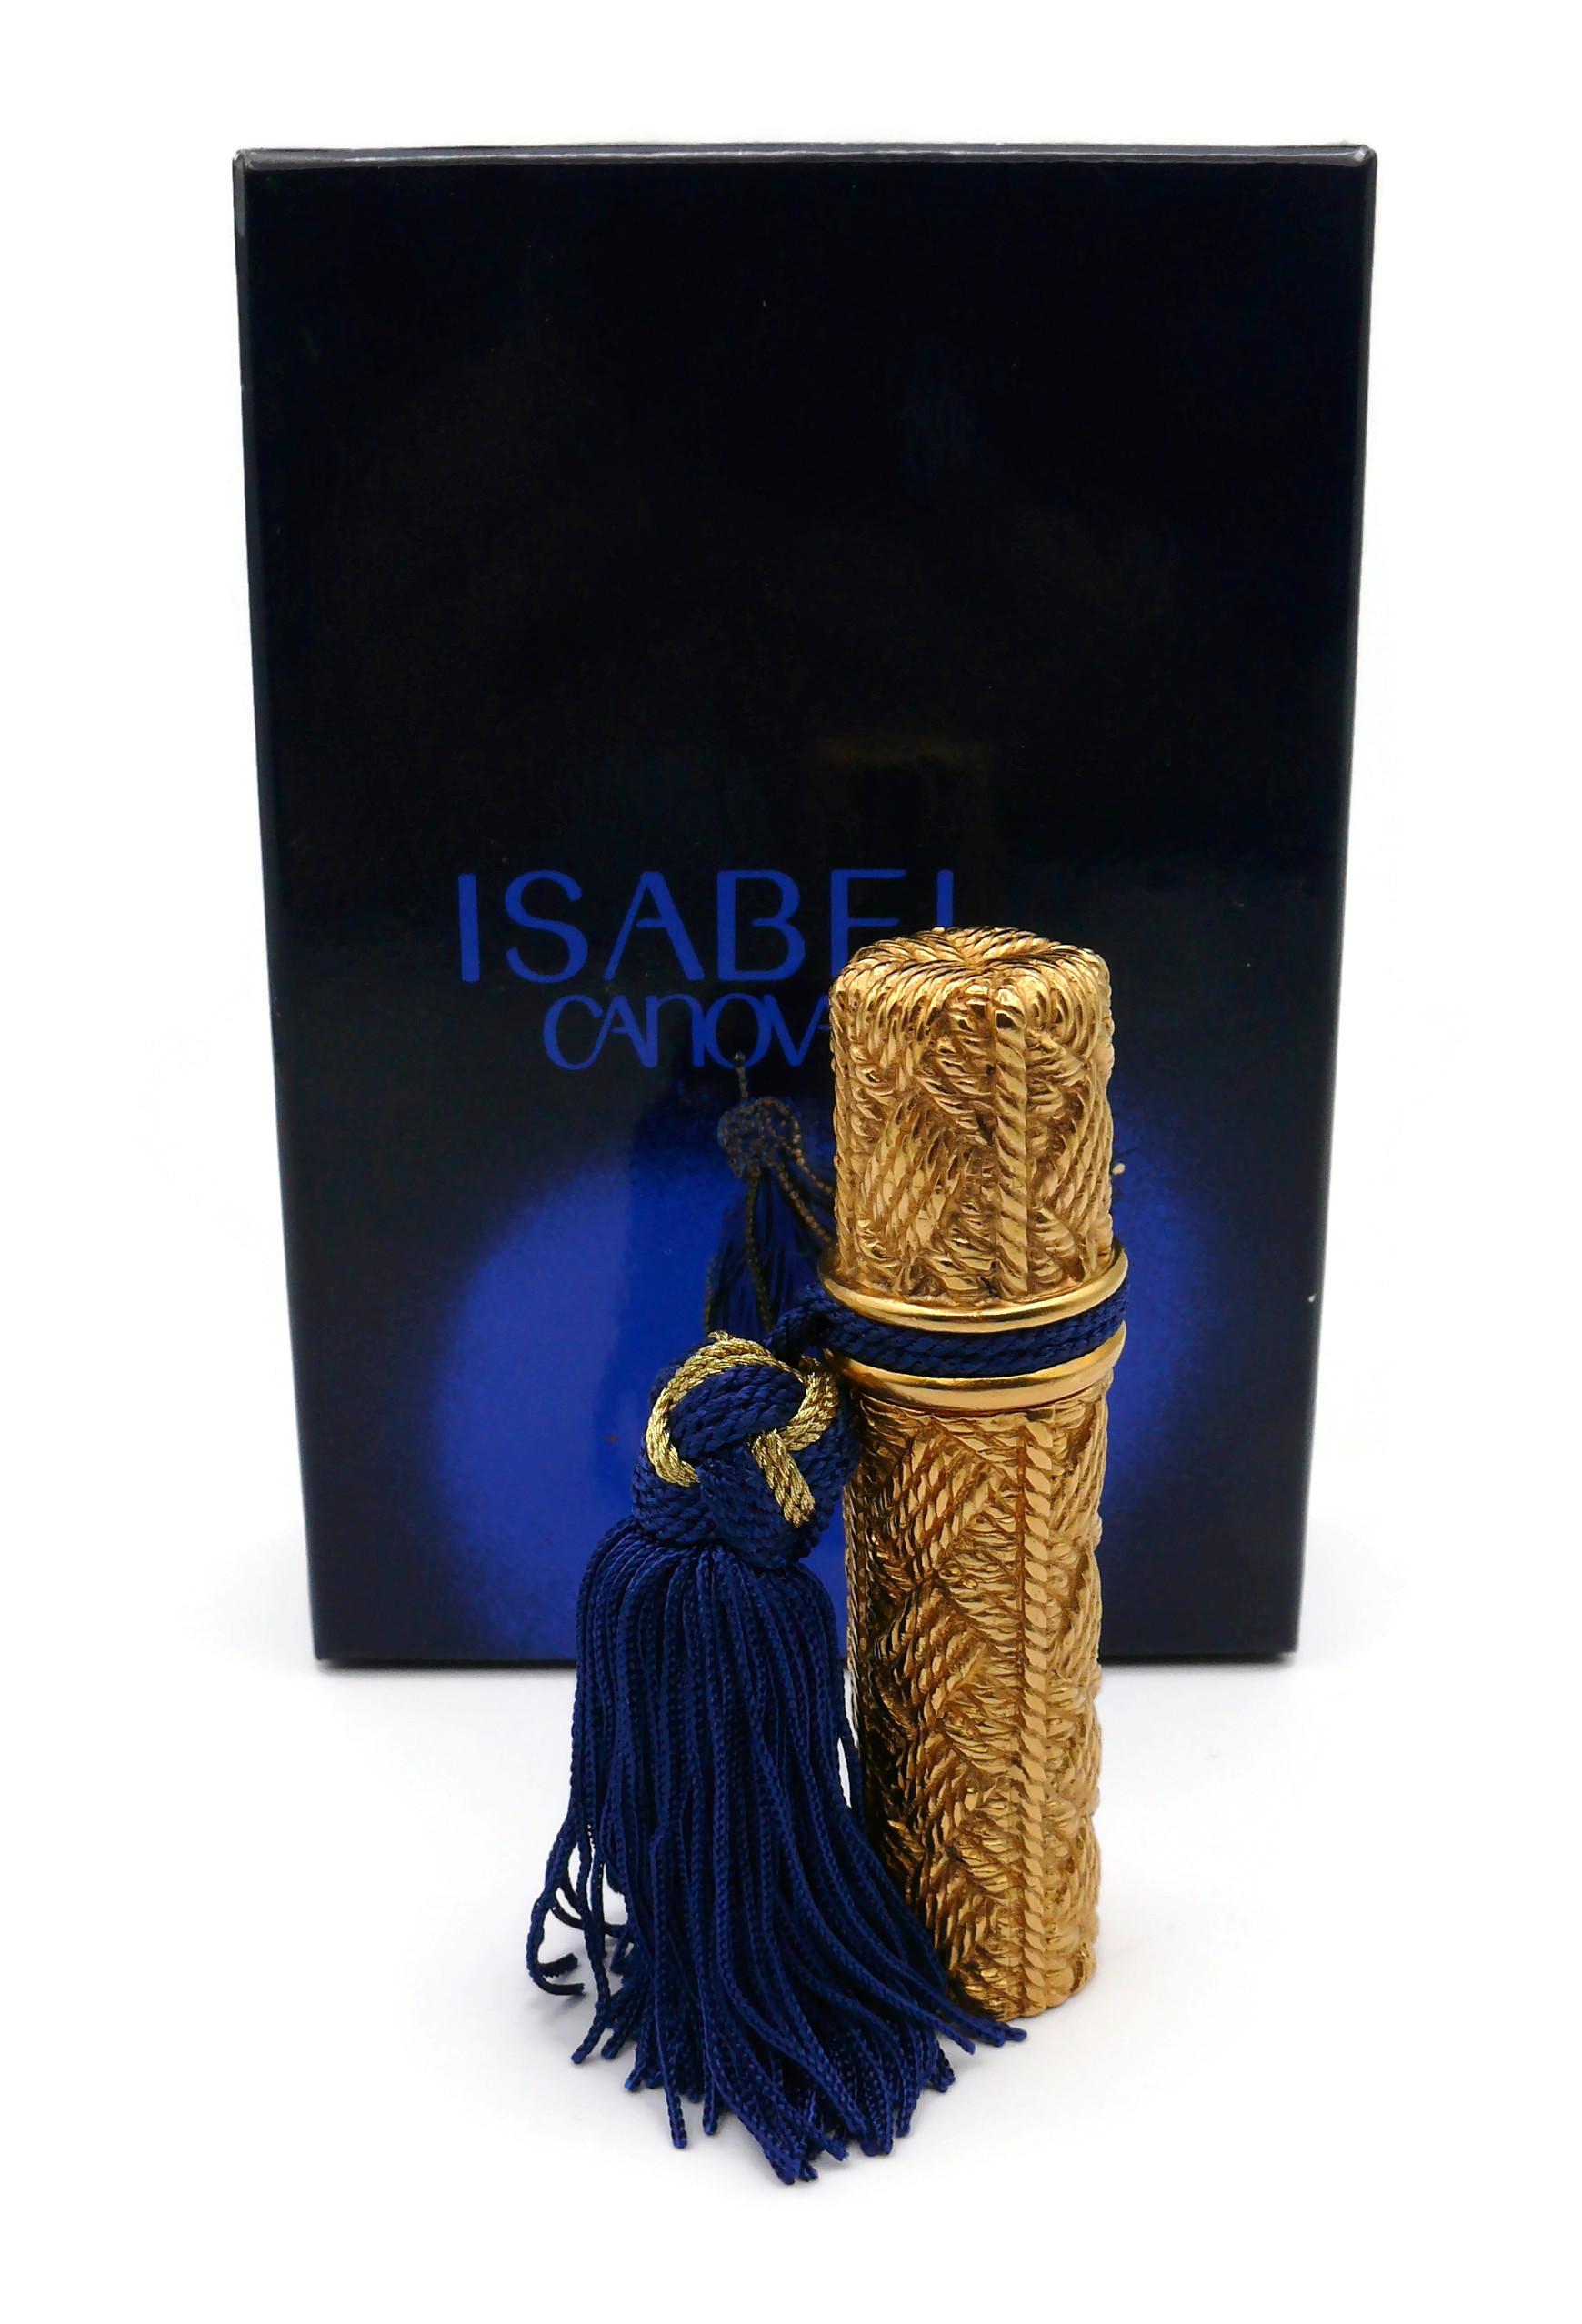 ISABEL CANOVAS Parfum by ROBERT GOOSSENS Vintage-Zerstäuber mit einem goldfarbenen Metallgeflecht, das mit einer blauen und goldenen Quaste verziert ist.

Geprägte ISABEL CANOVAS PARIS Made in France.

WICHTIGE INFORMATIONEN
- Der ISABEL CANOVAS